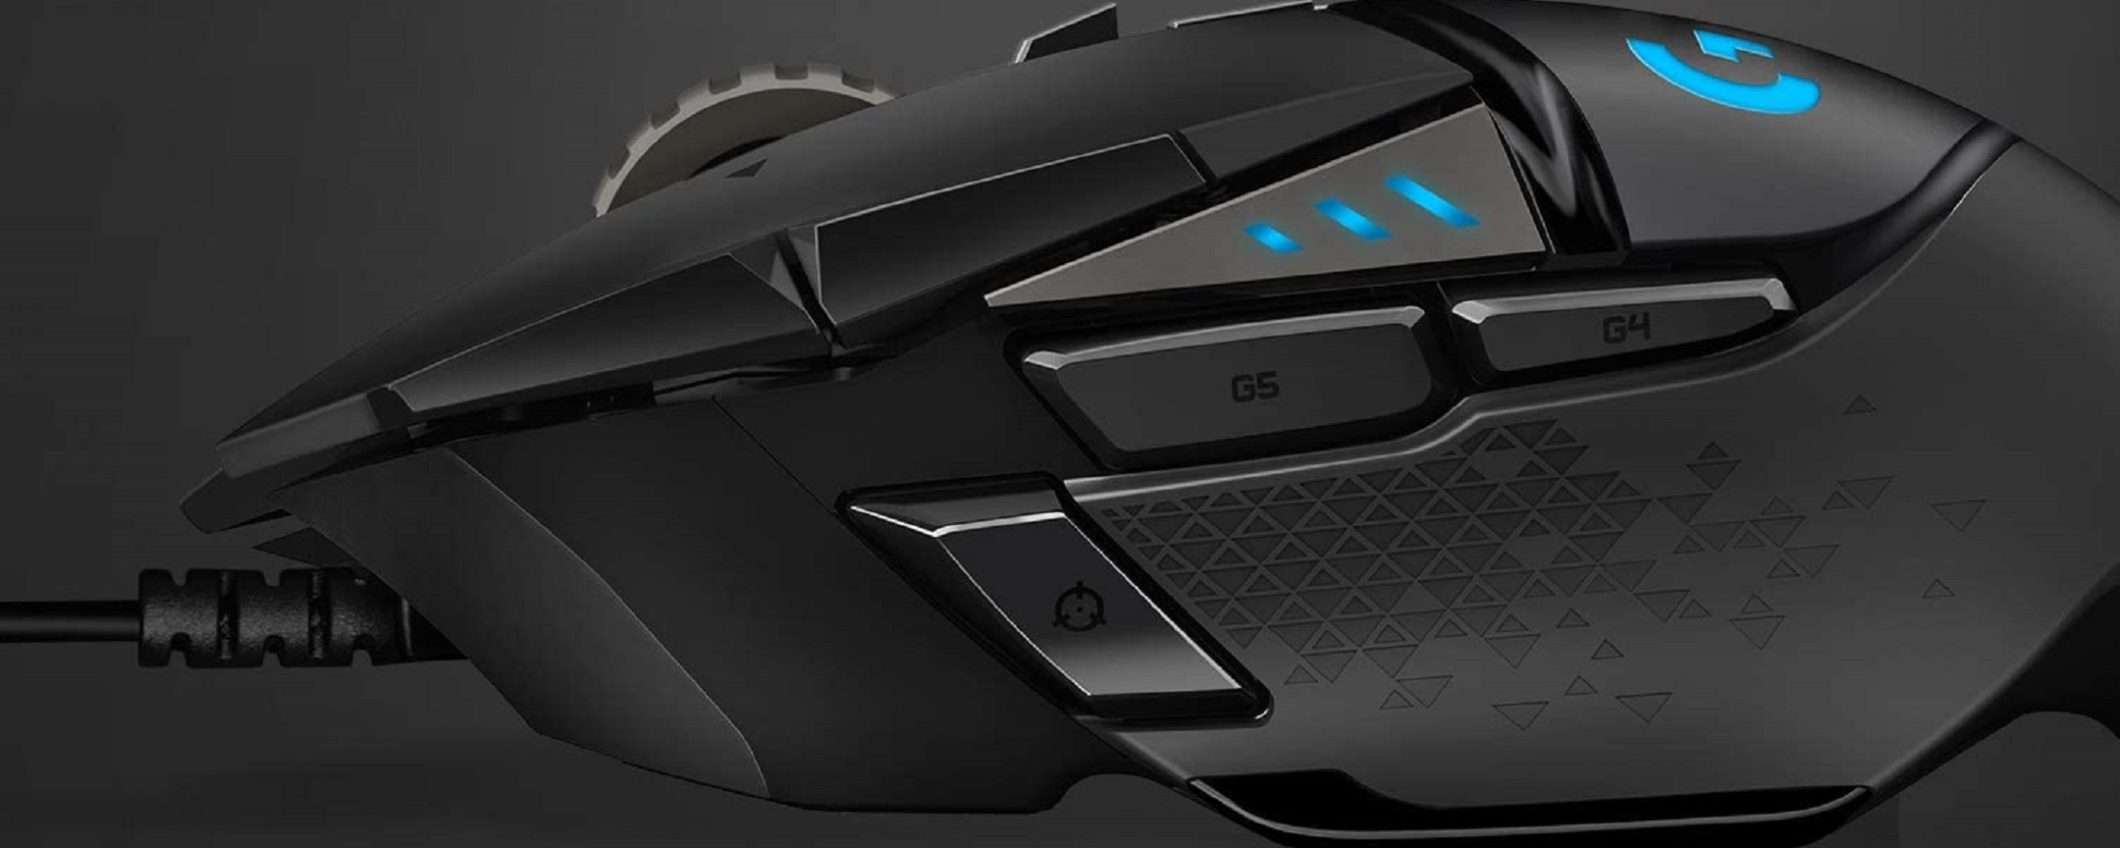 Logitech G502 HERO: il super mouse al prezzo più basso di sempre